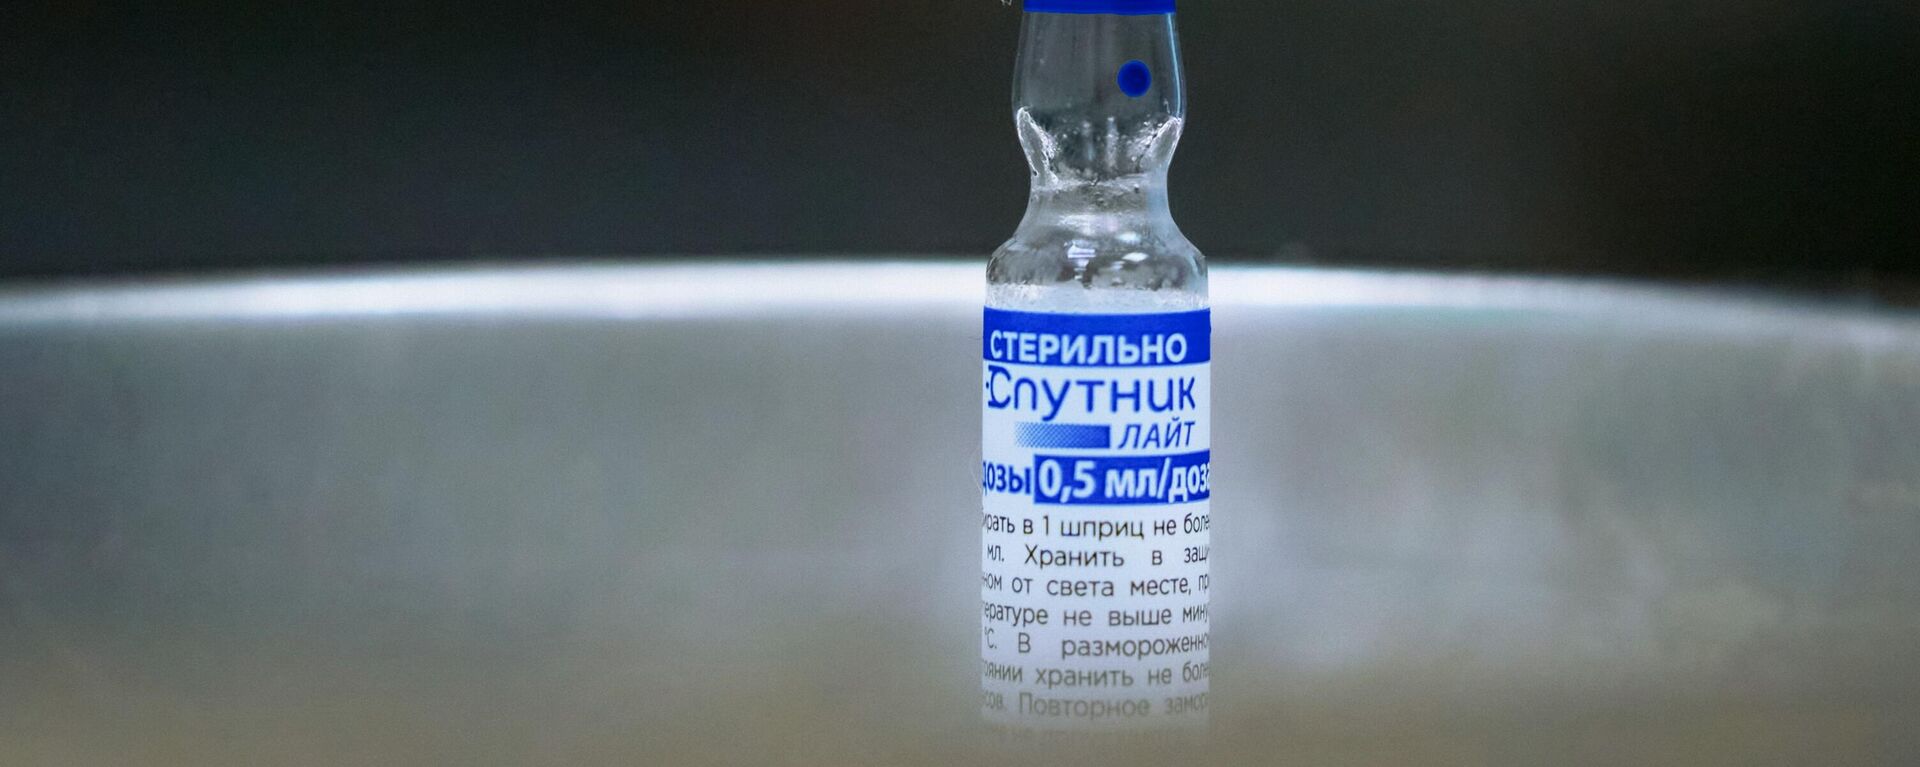  Sputnik V vakcina nuo koronaviruso - Sputnik Lietuva, 1920, 02.09.2021